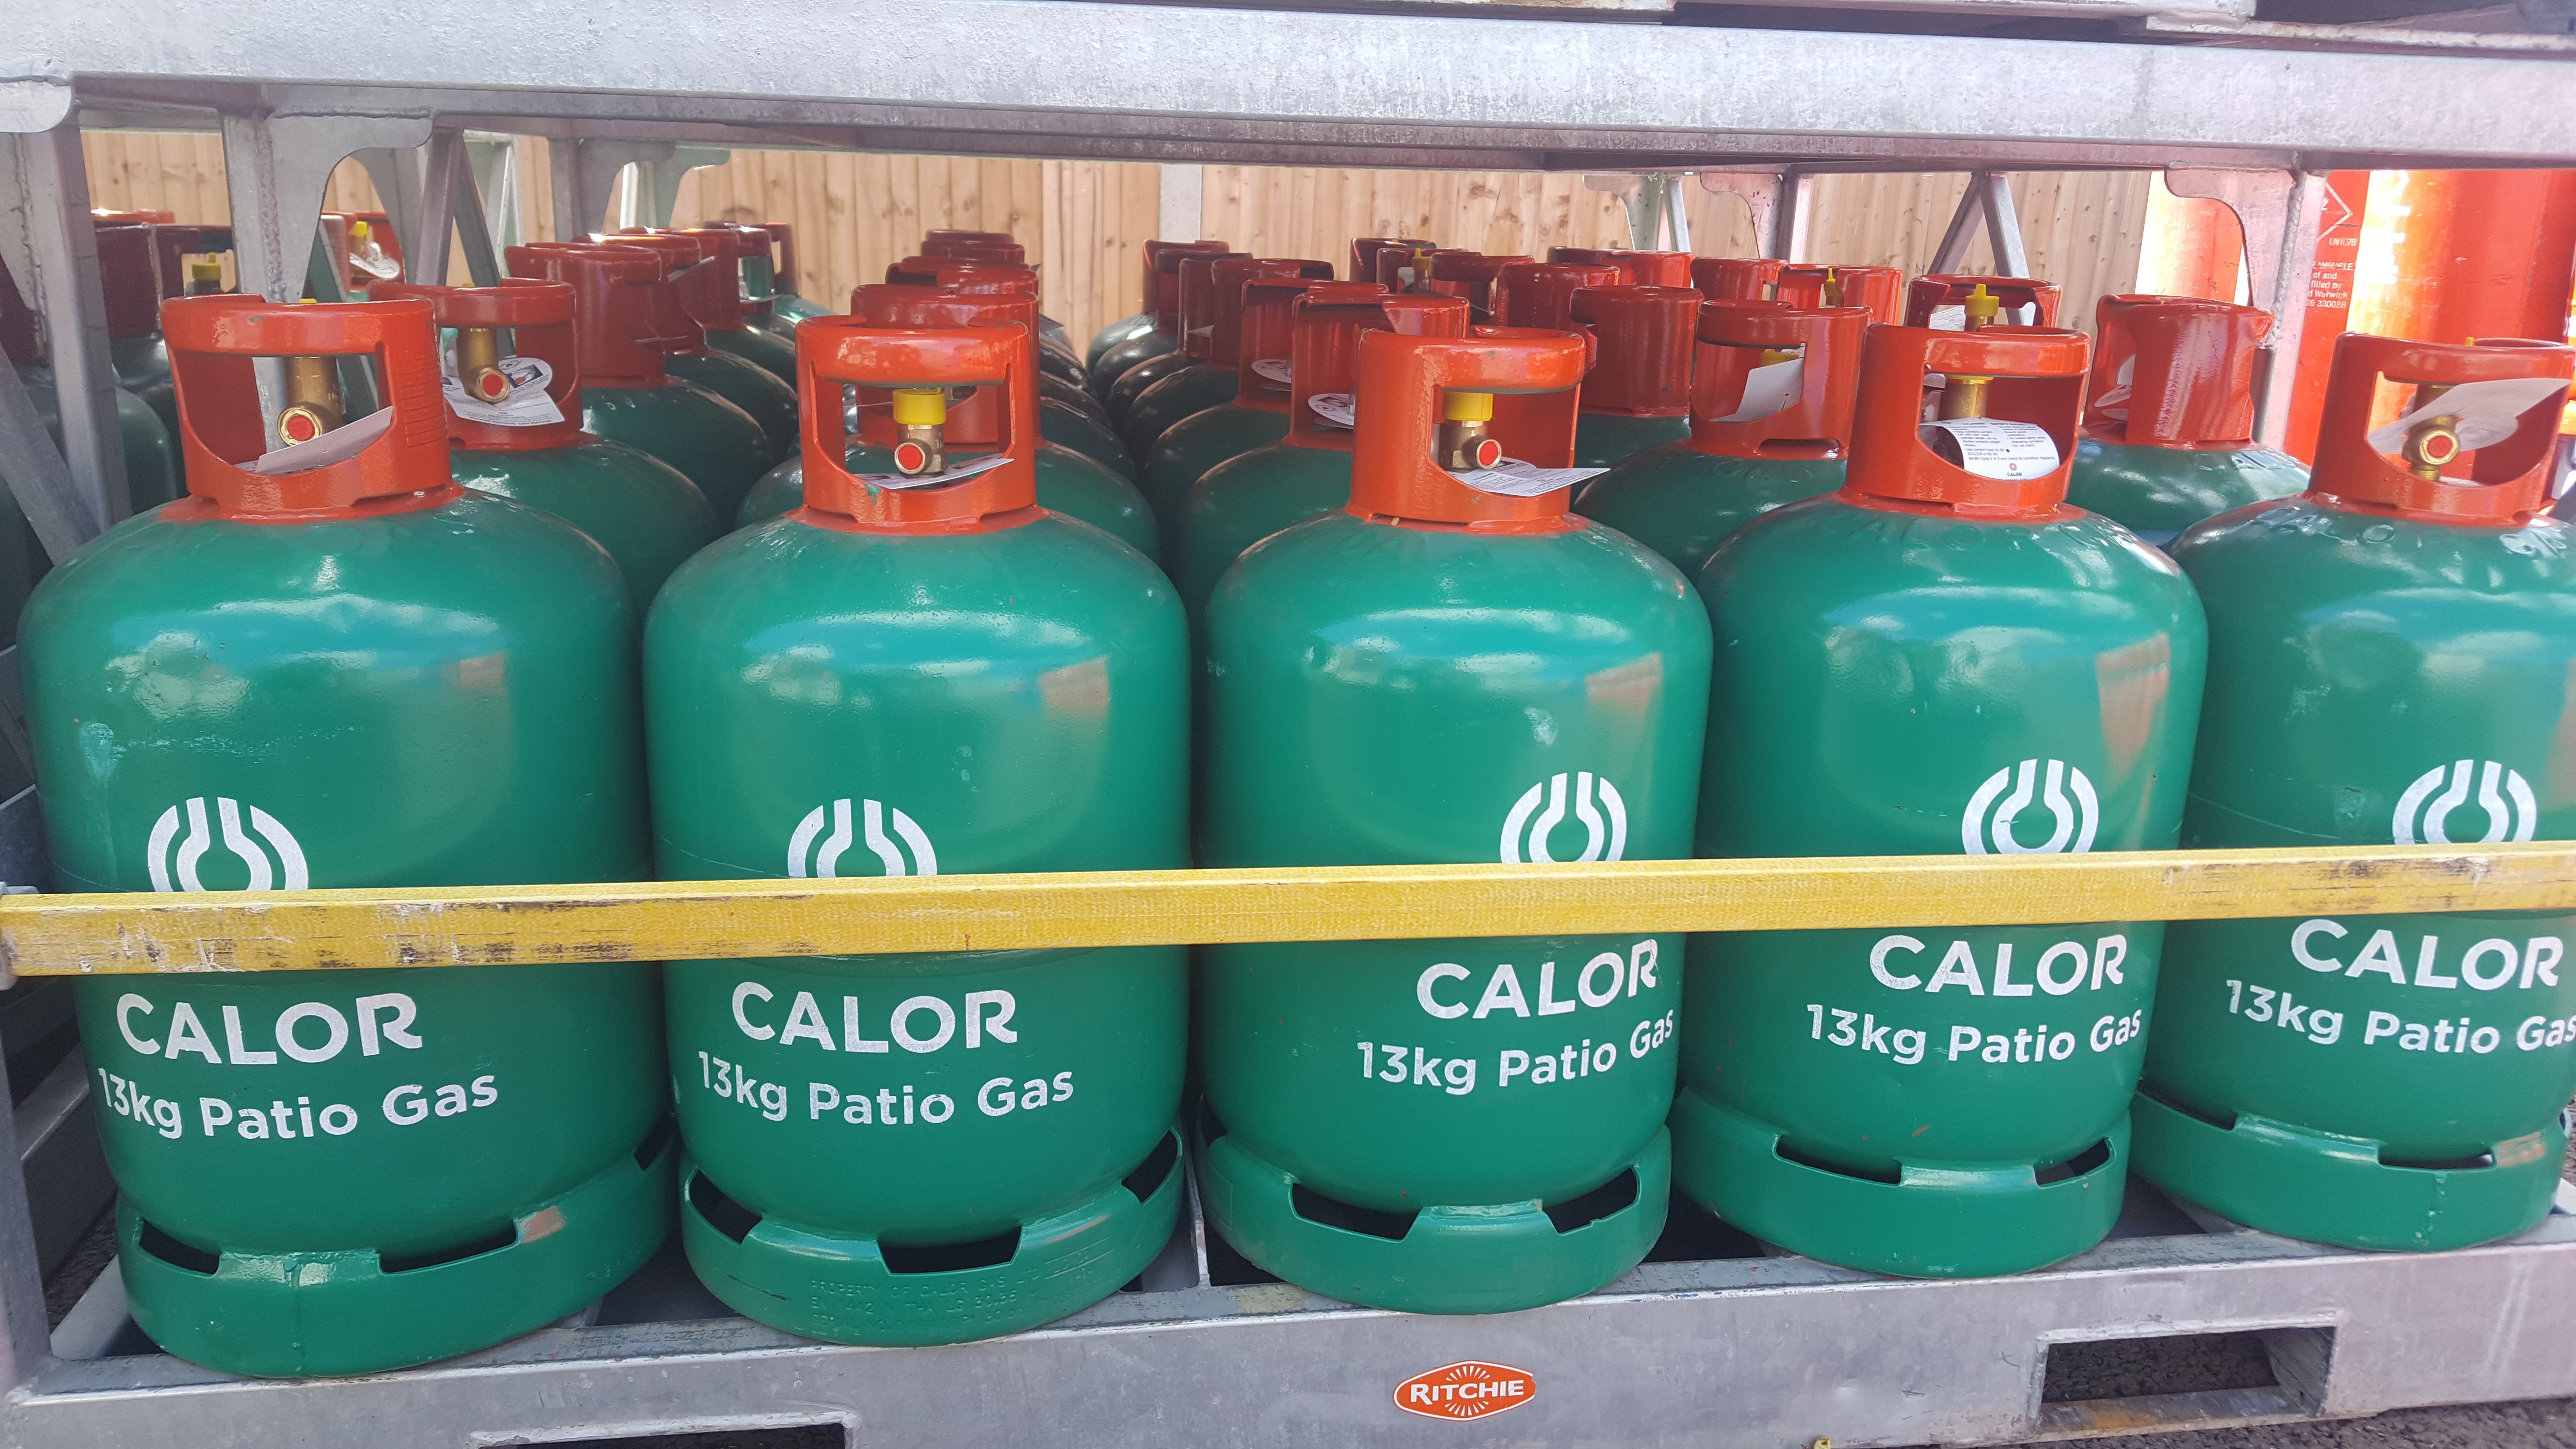 13kg Patio Calor Gas Bottle Supplier Bournemouth